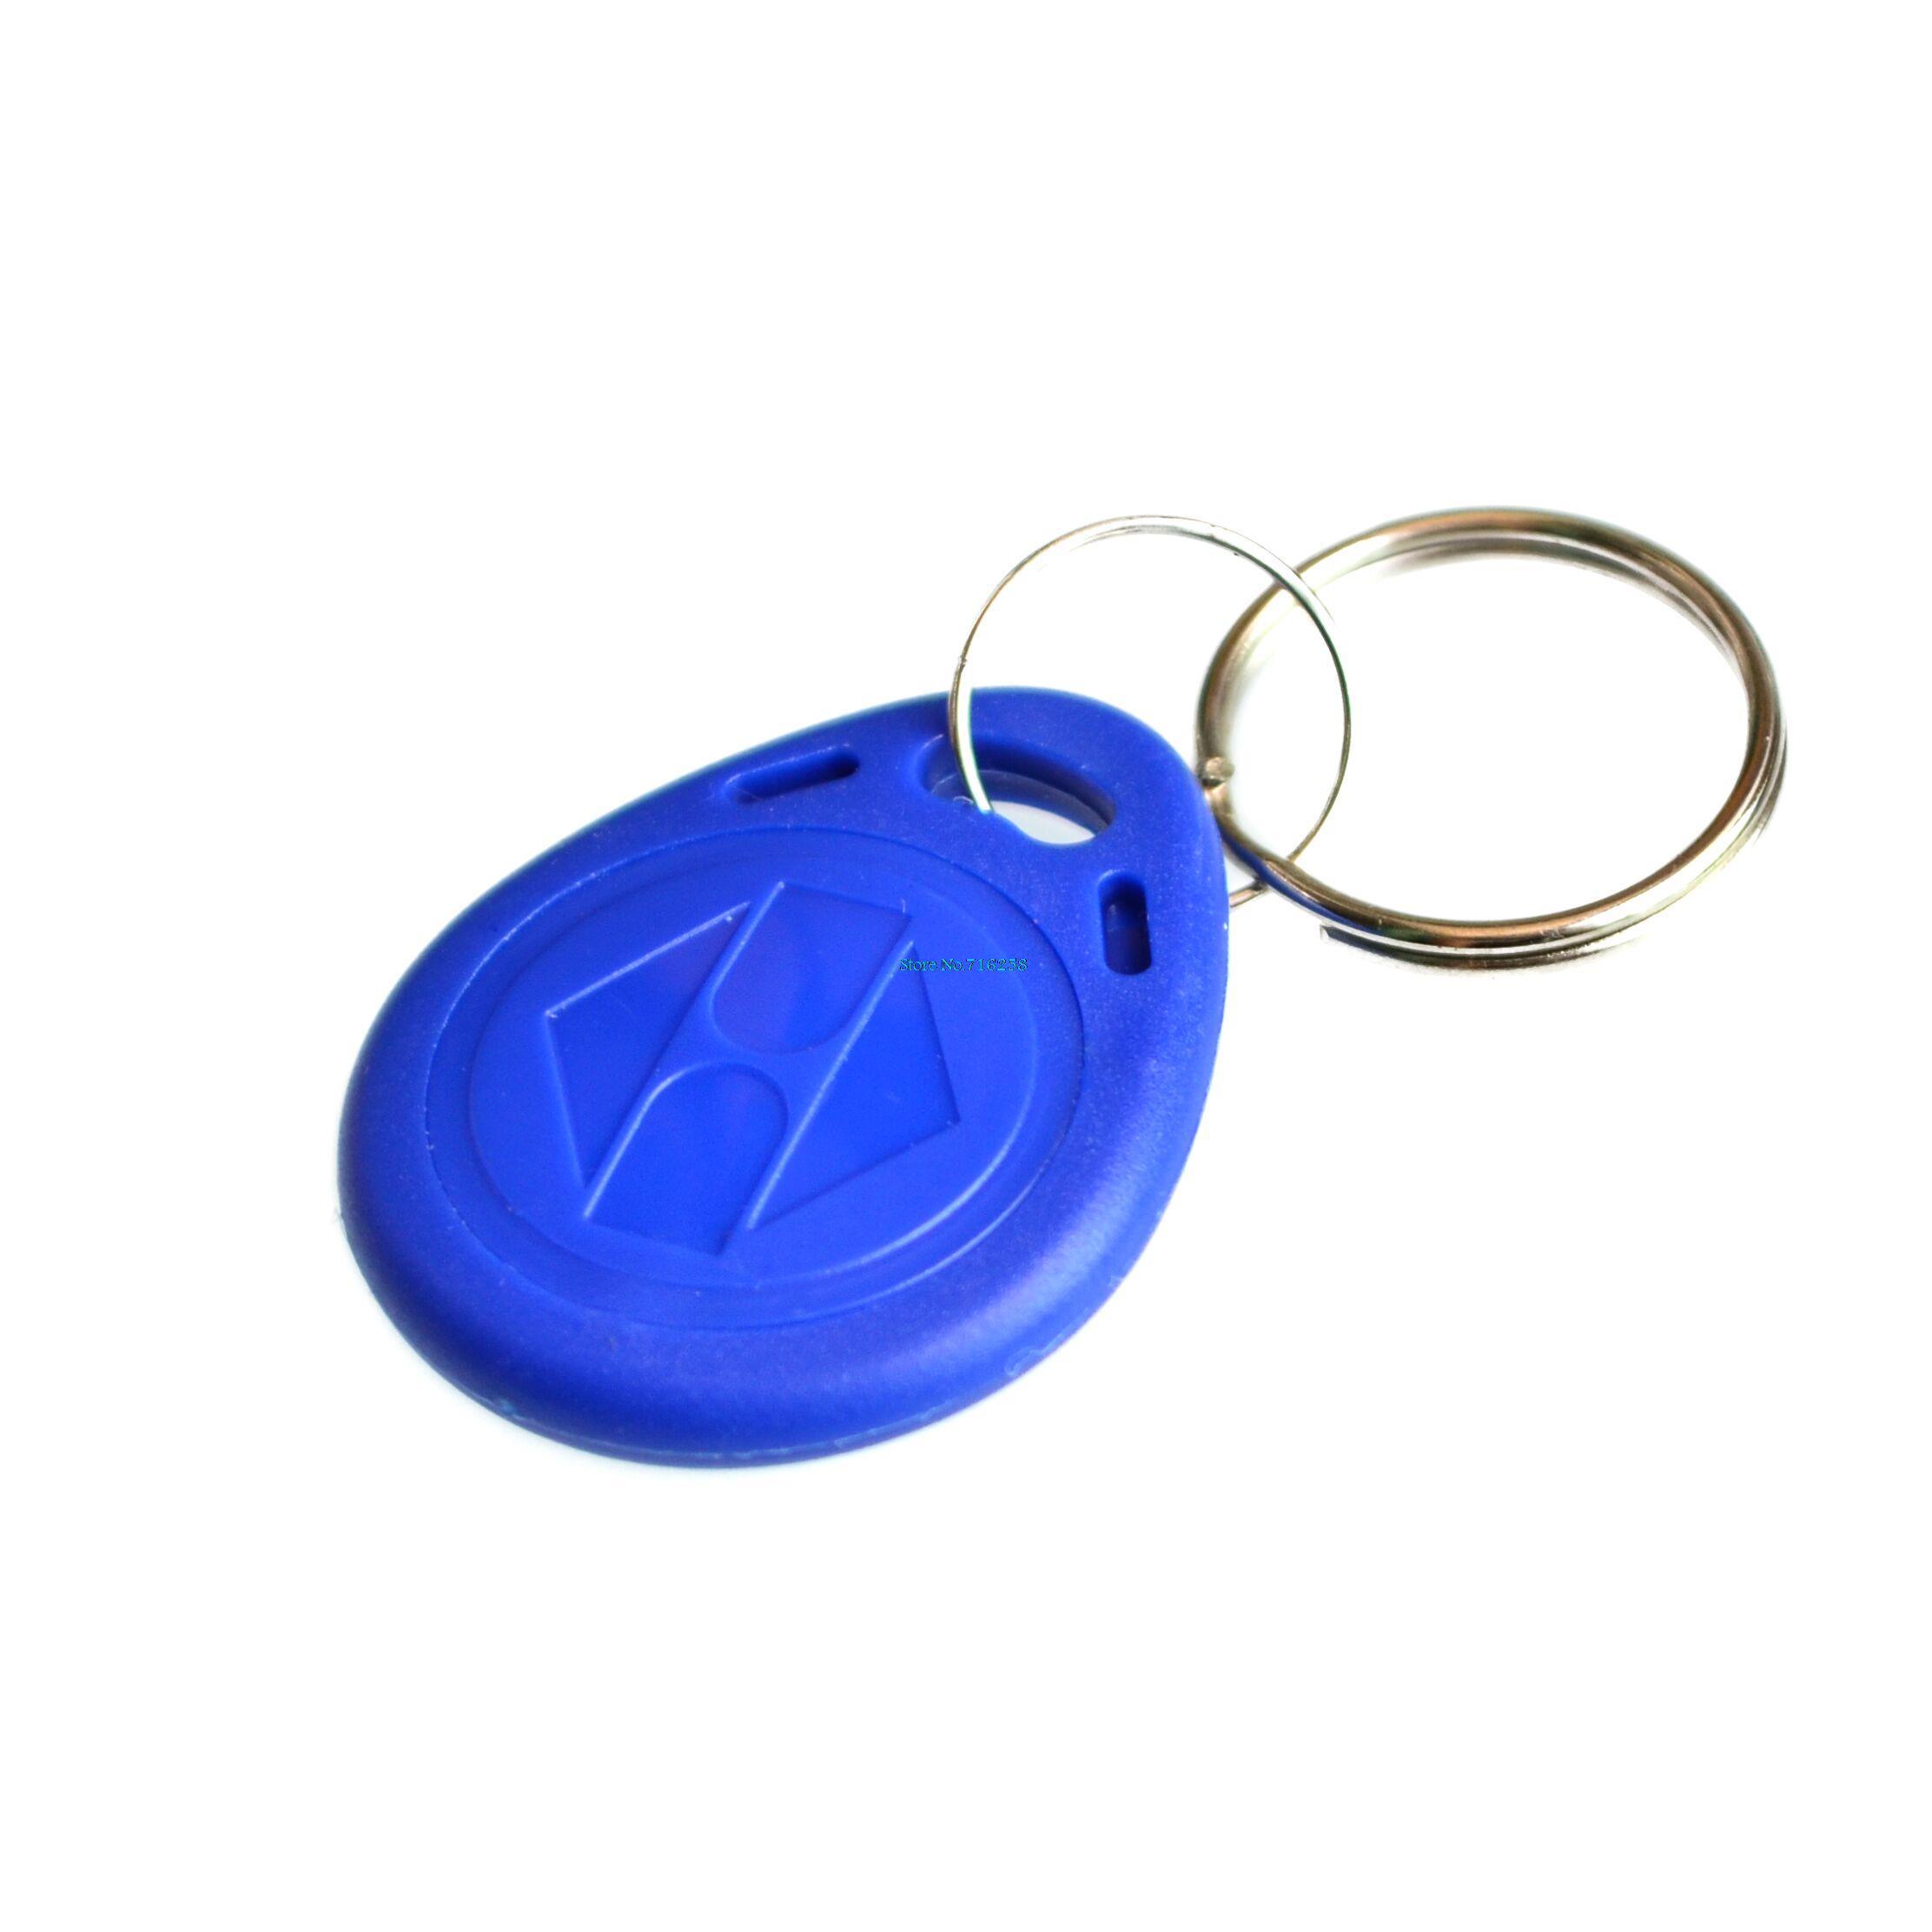 10pcs-125khz-RFID-Proximity-ID-Token-Key-Tag-Keychain-Waterproof-New